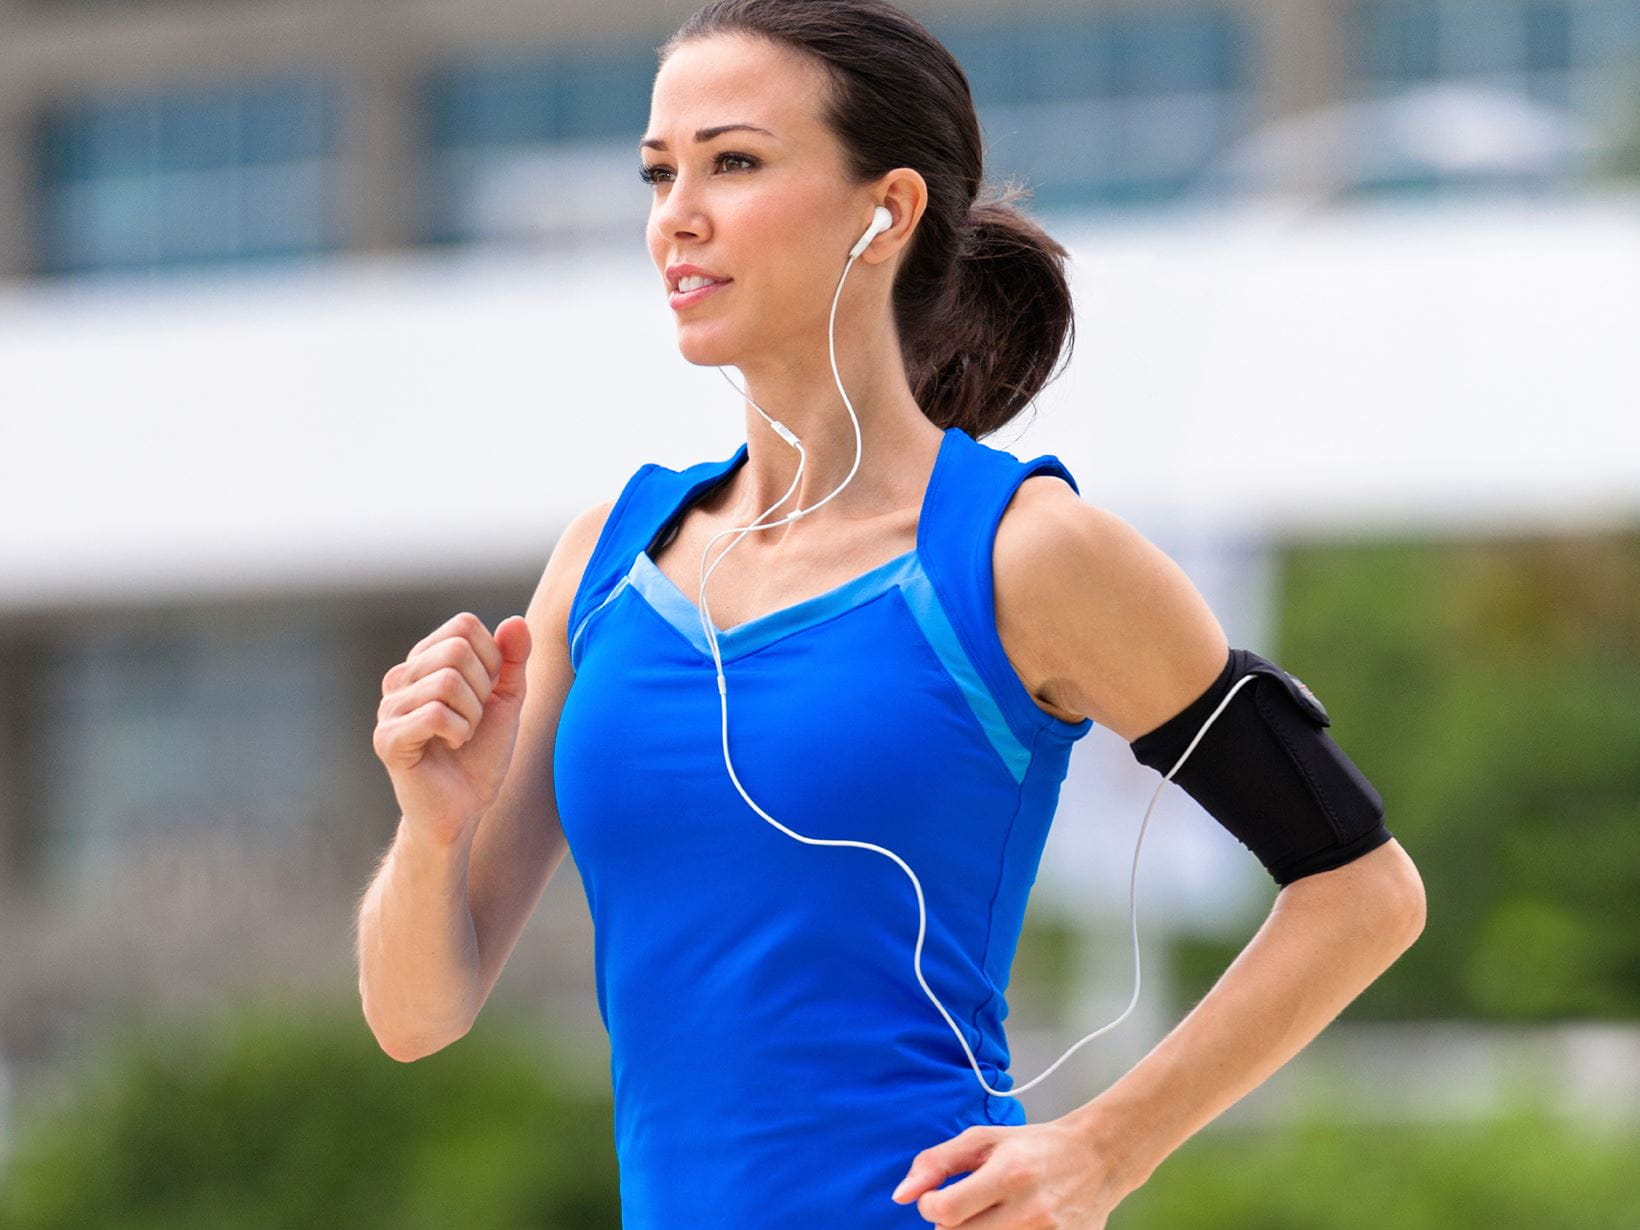 Járj futni, így növelheted általános fizikai kondíciódat is